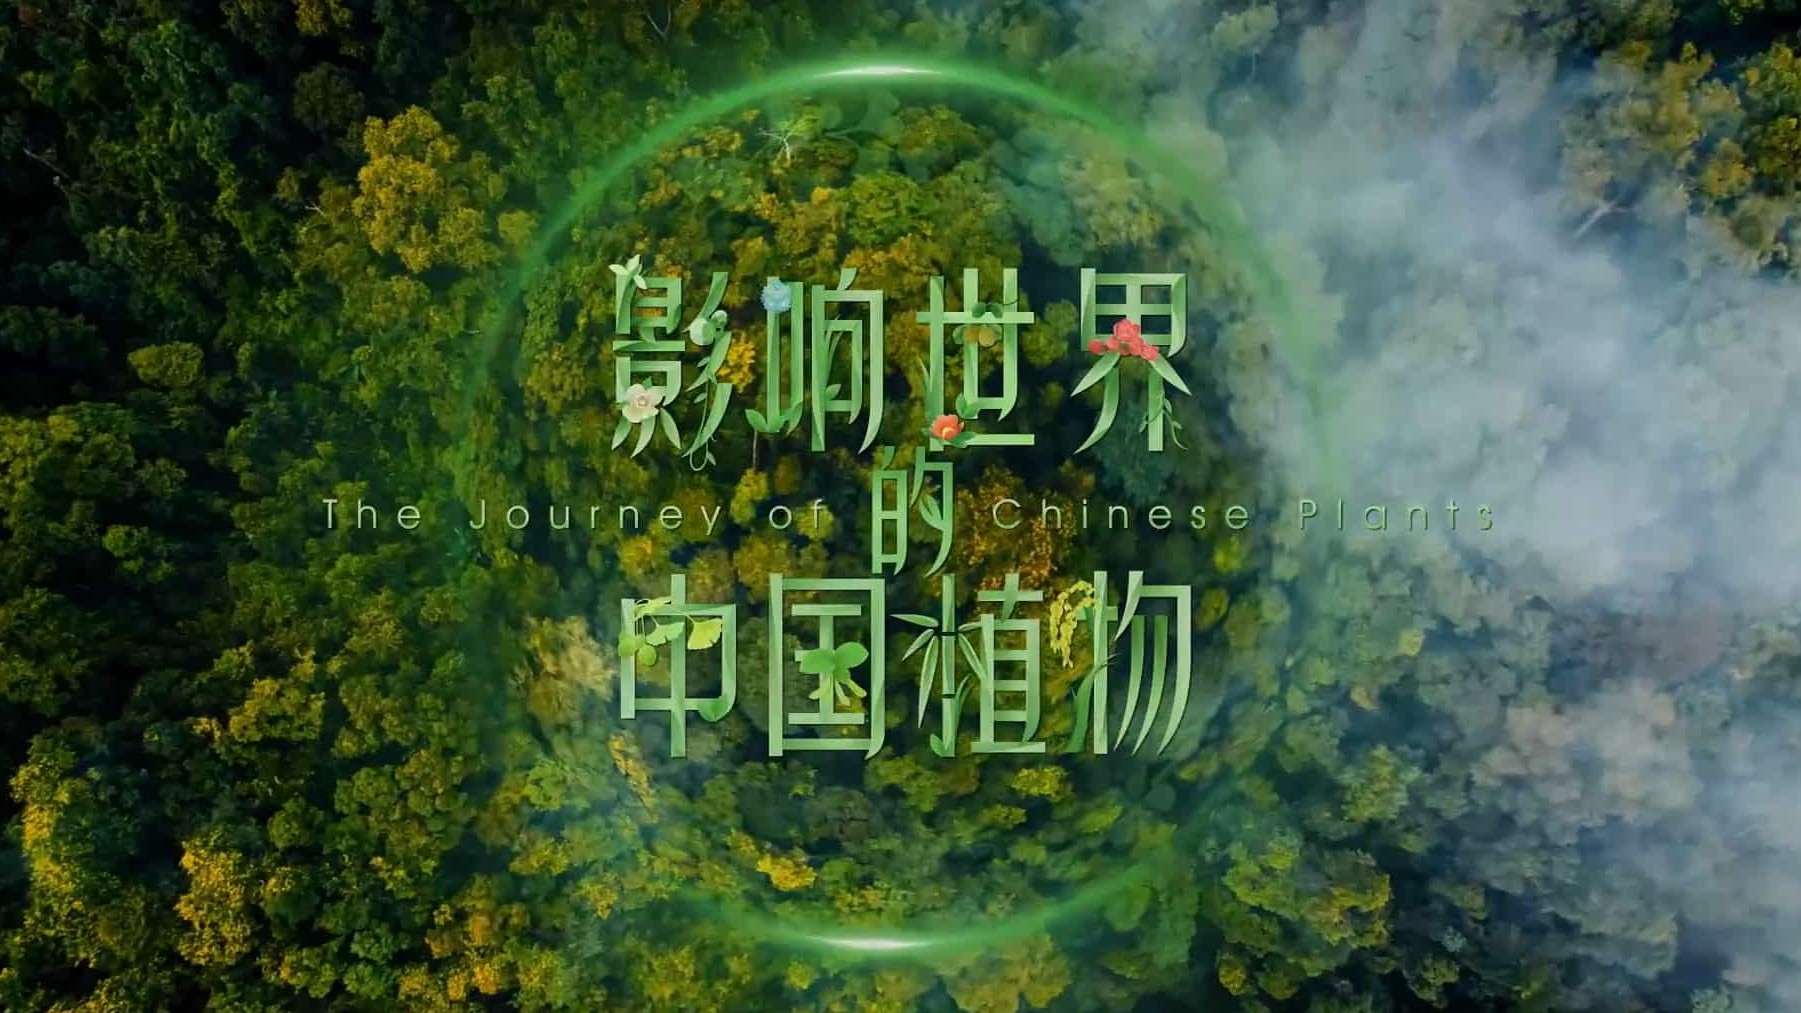 央视纪录片/ 植物纪录片《影响世界的中国植物 The Journey of Chinese Plants 2019》全10集 国语中字 1080P高清下载